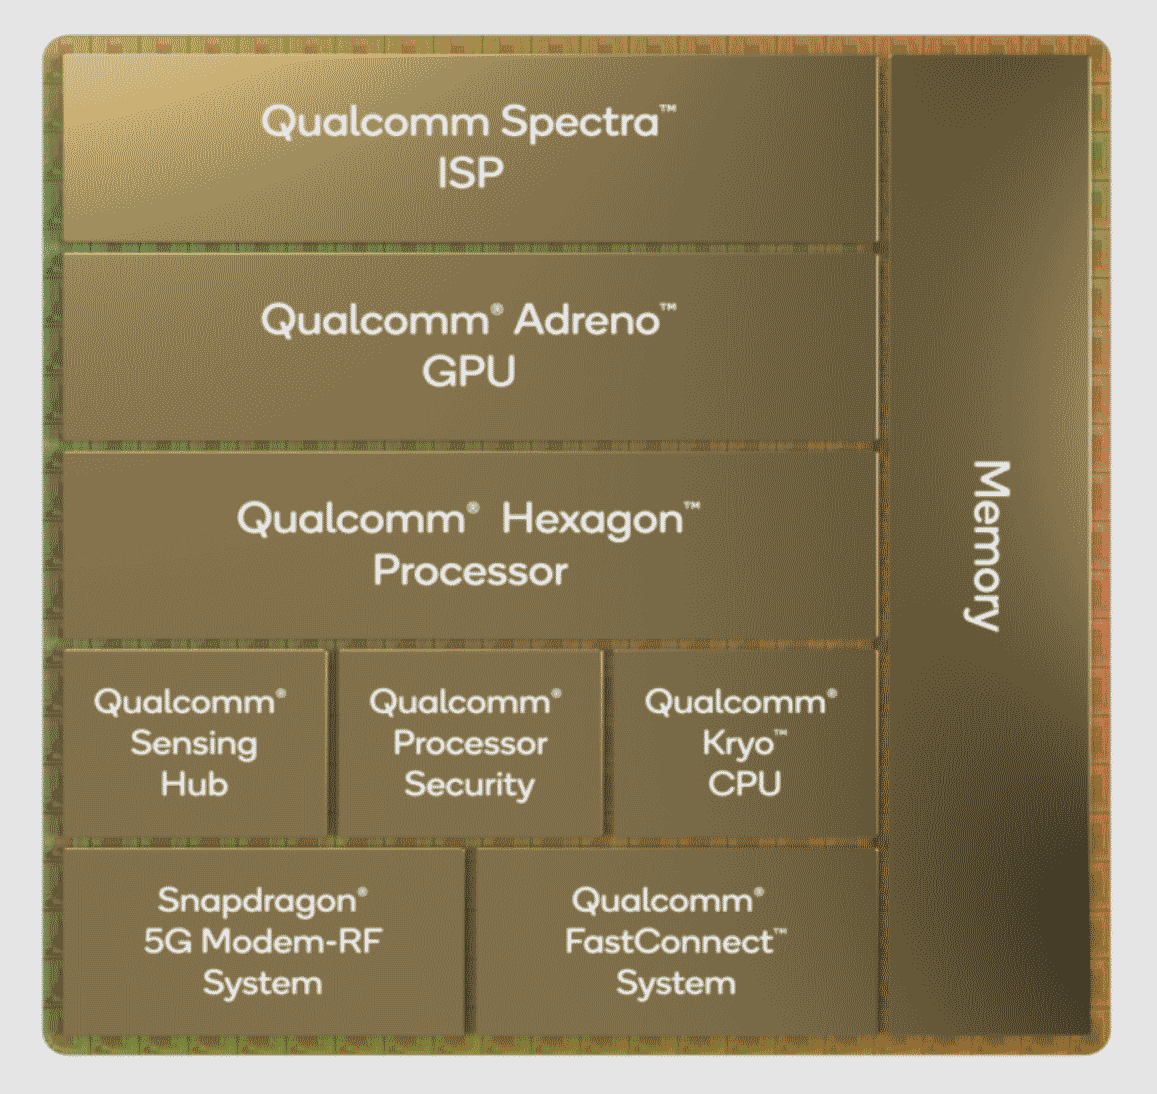 Nuevo procesador Snapdragon 8 Gen 1